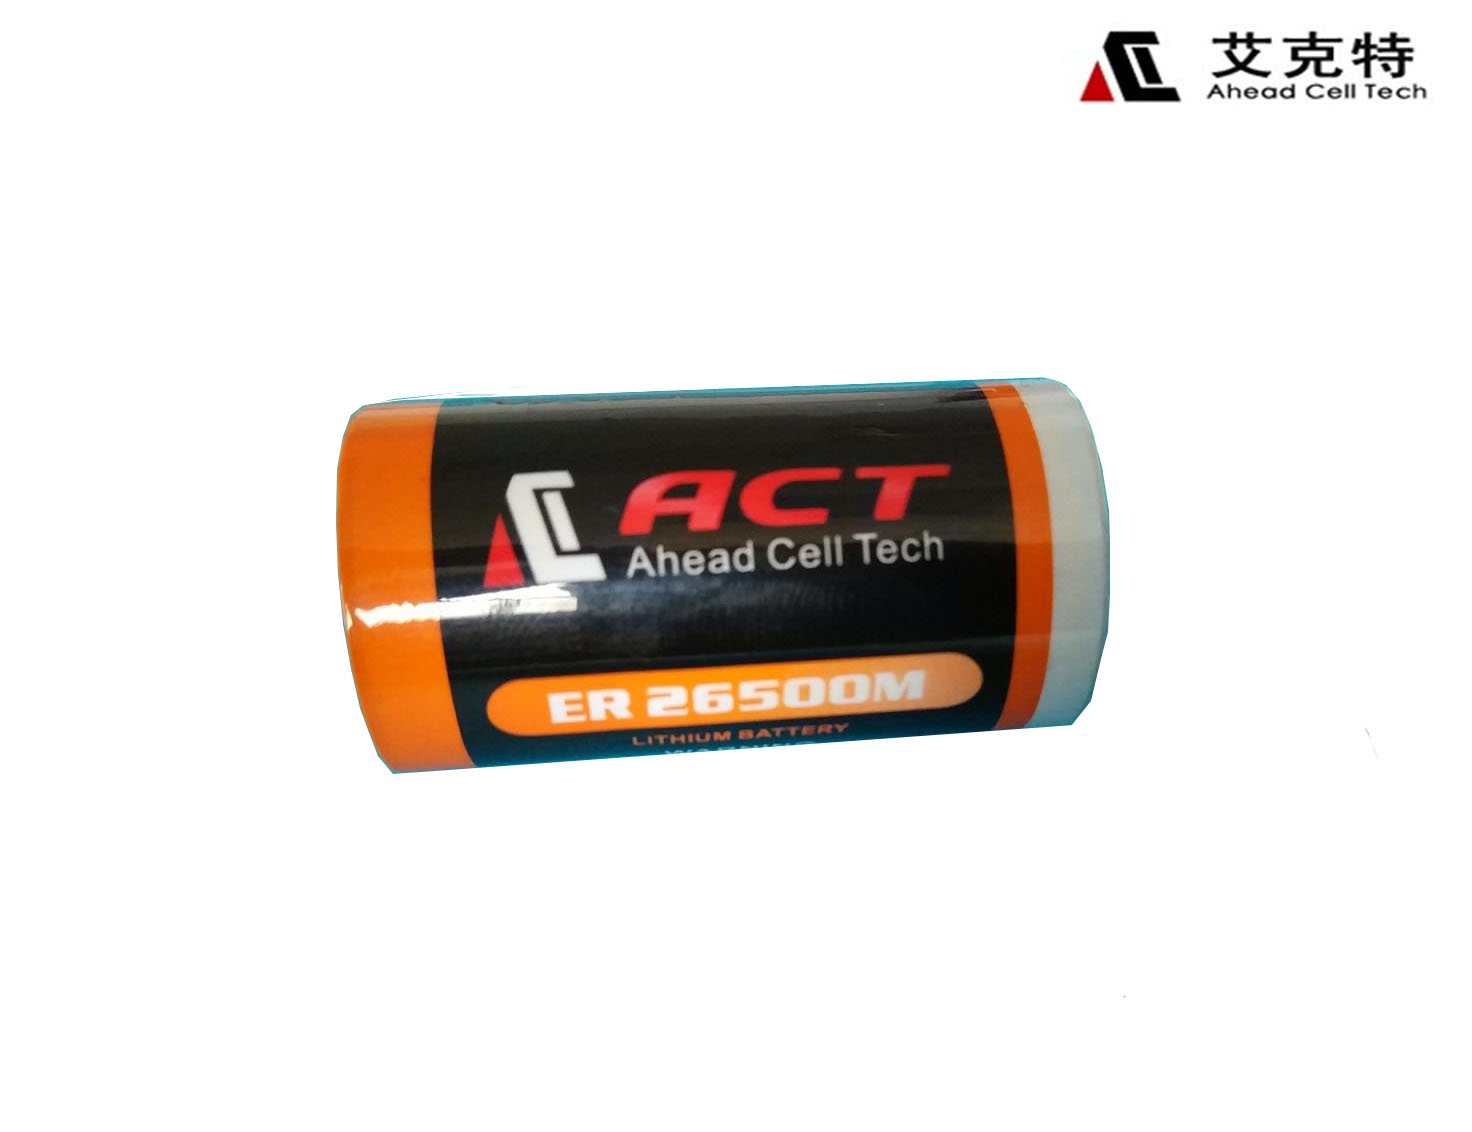 艾克特电池ER26500M水表热量表仪器仪表**电池厂家直销质量保证